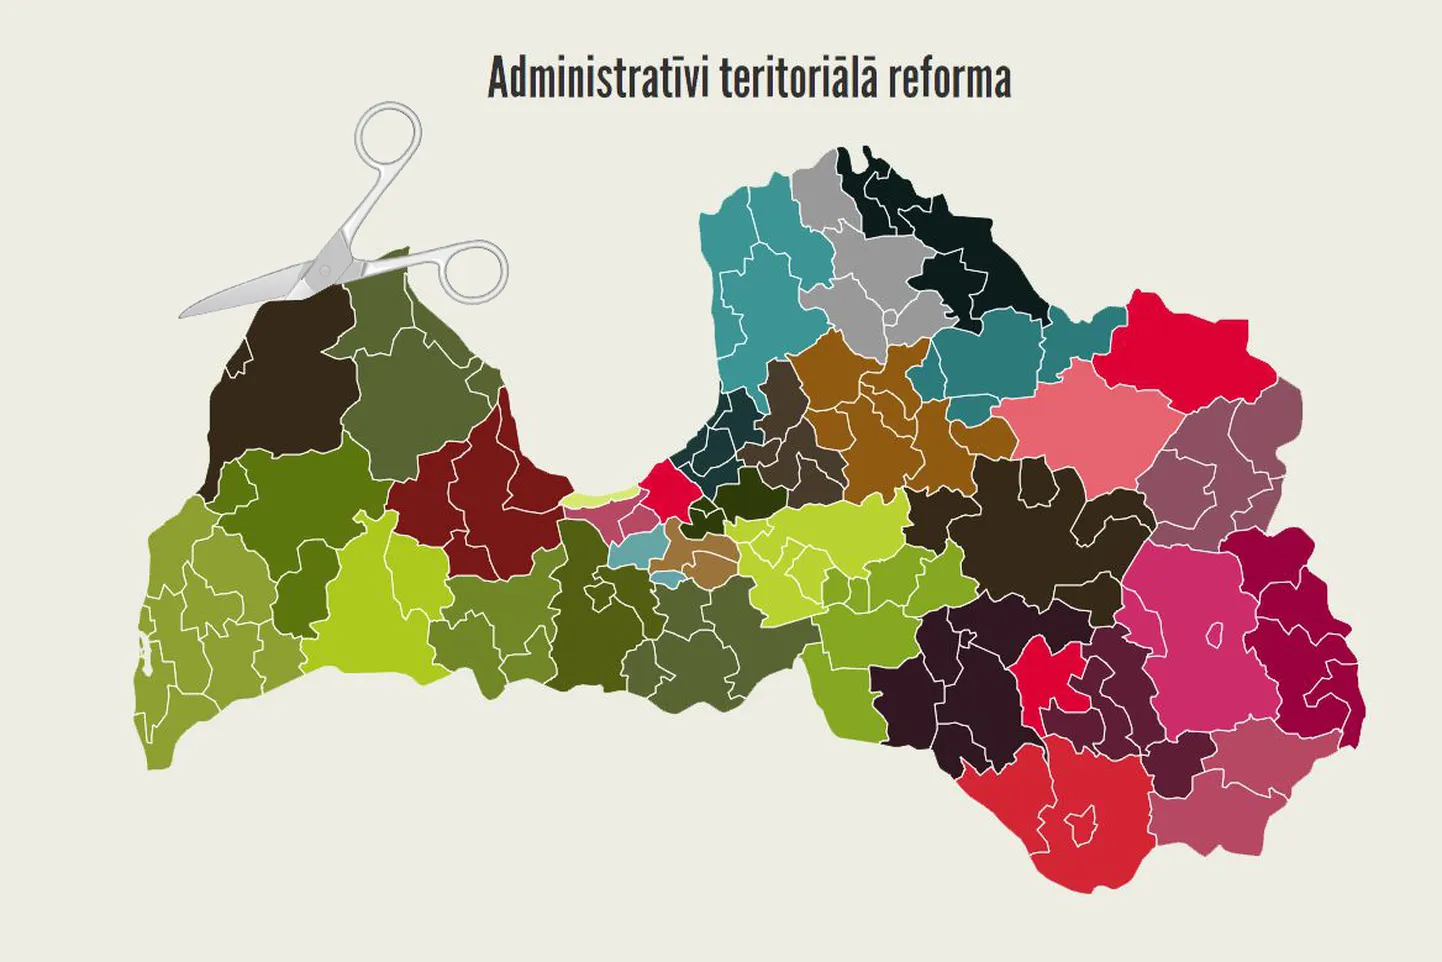 Административно-территориальная реформа